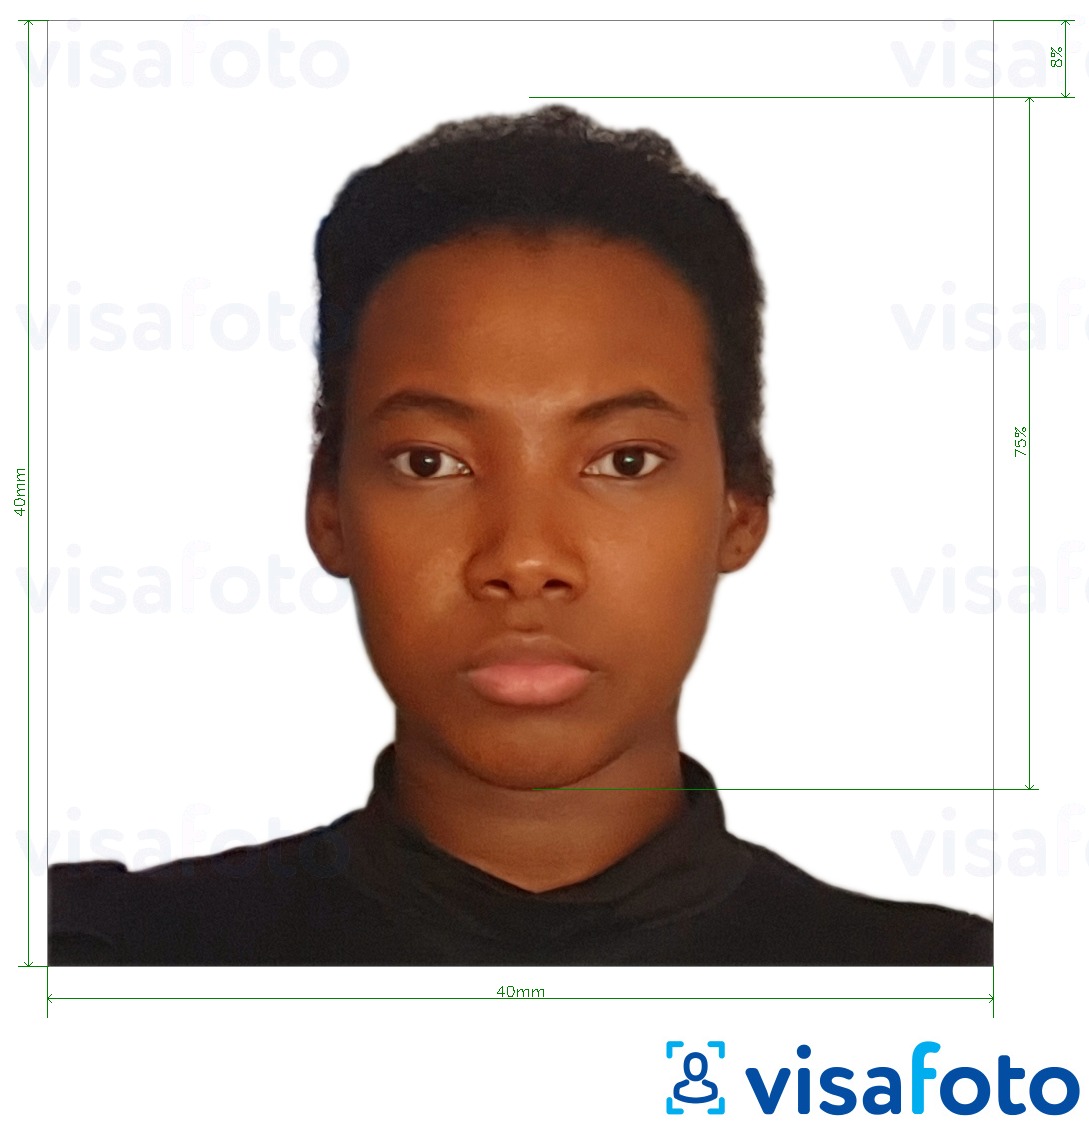 Esempio di foto per Passaporto camerunese 4x4 cm (40x40 mm) con specifiche delle dimensioni esatte